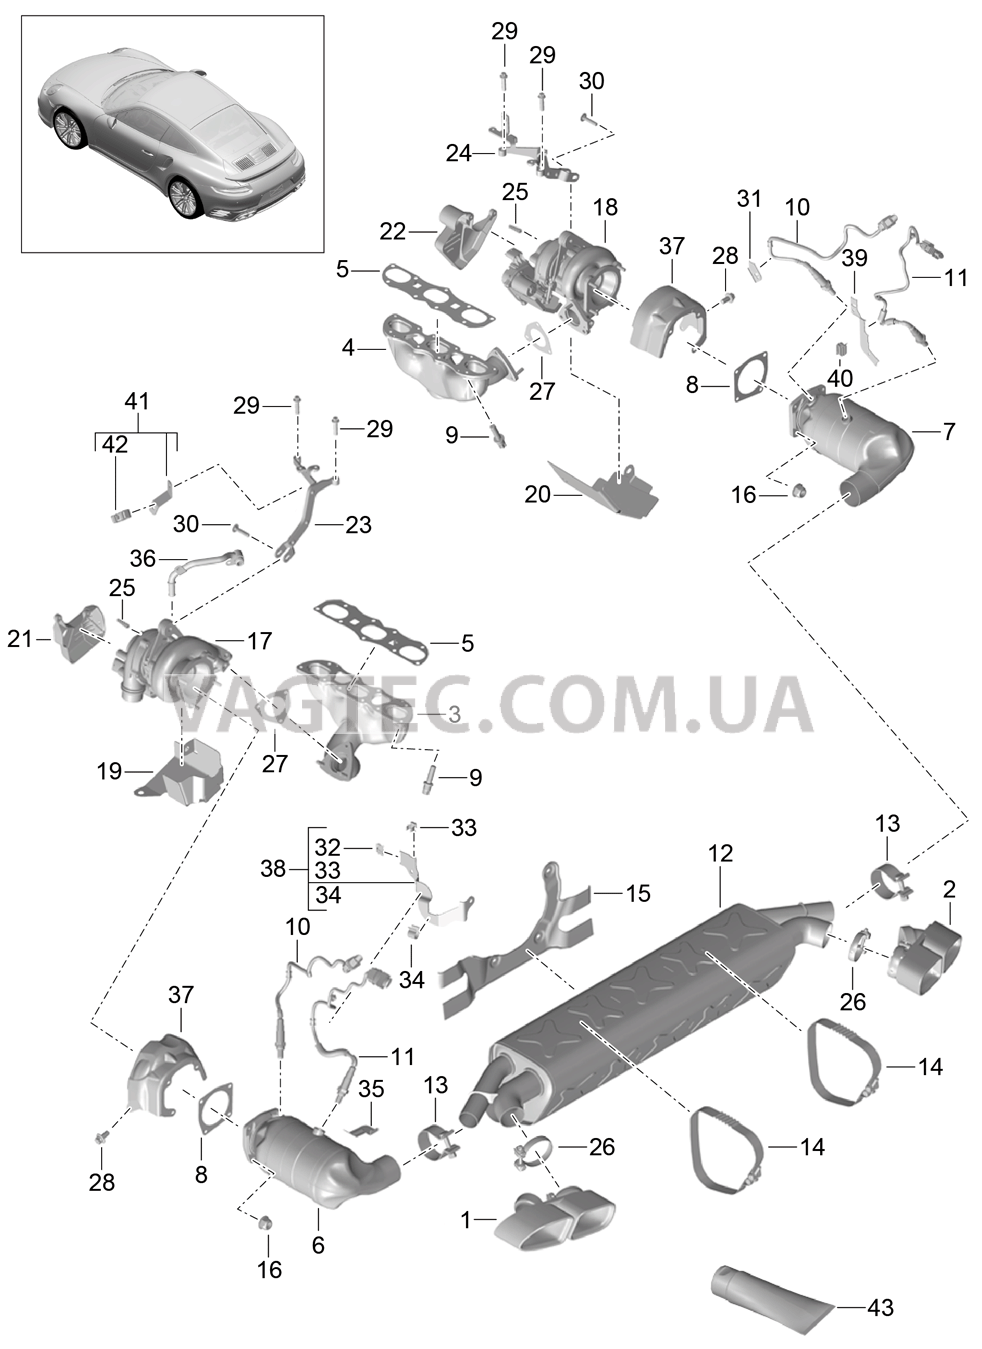 202-000 Выпускная система, Очистка ОГ, Турбонагнетатель ОГ для PORSCHE Porsche991Turbo 2014-2017